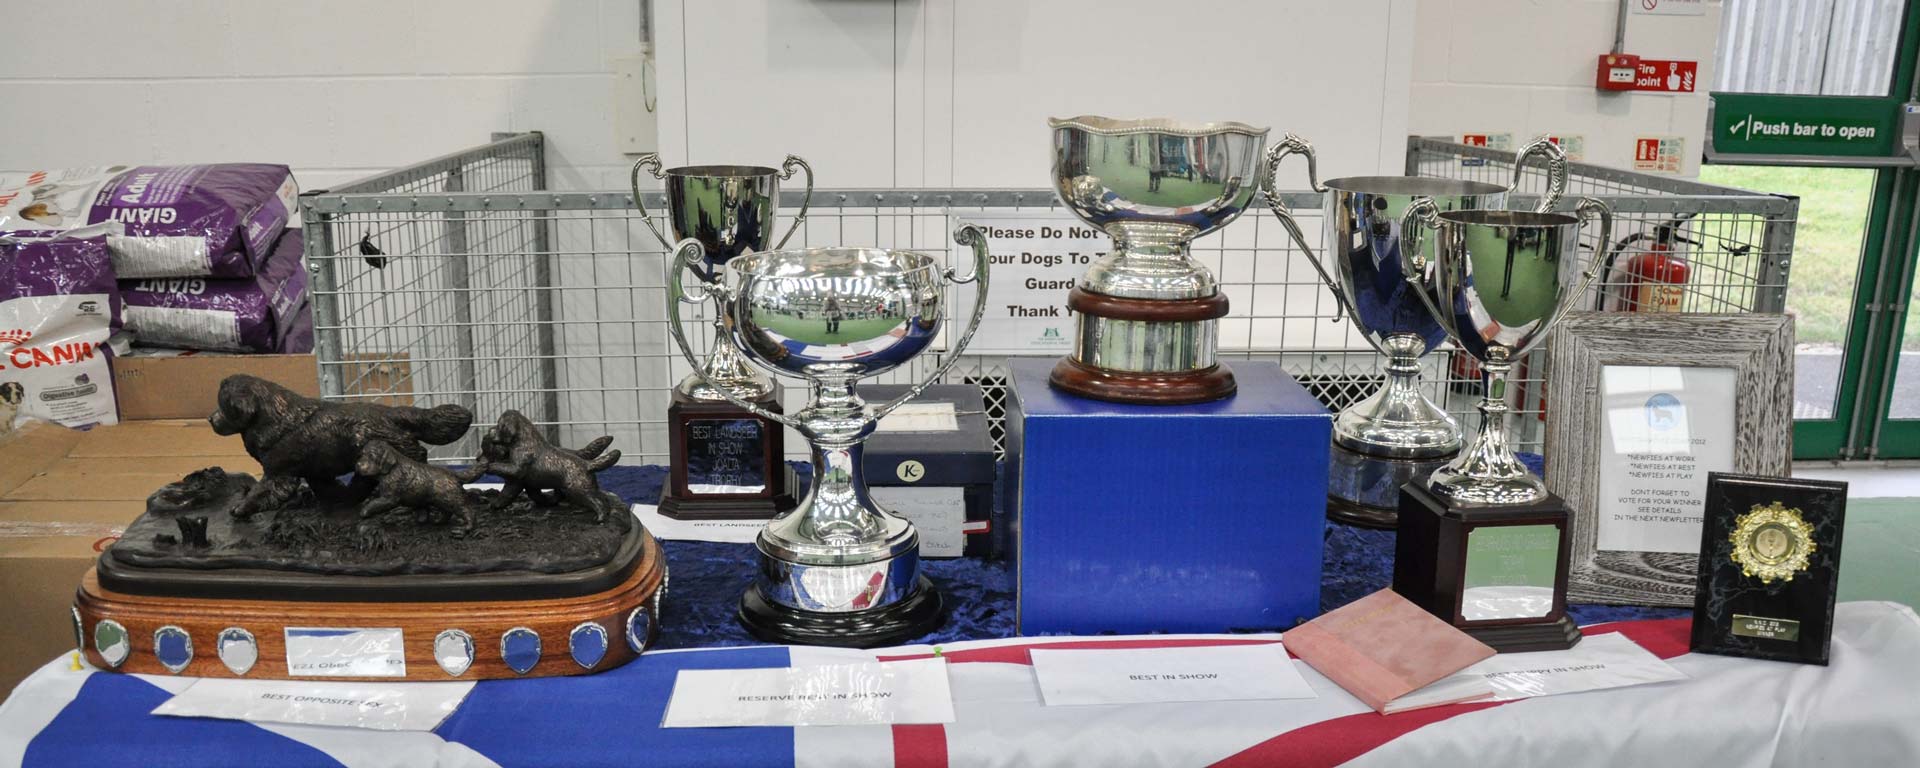 Championship Show Trophies